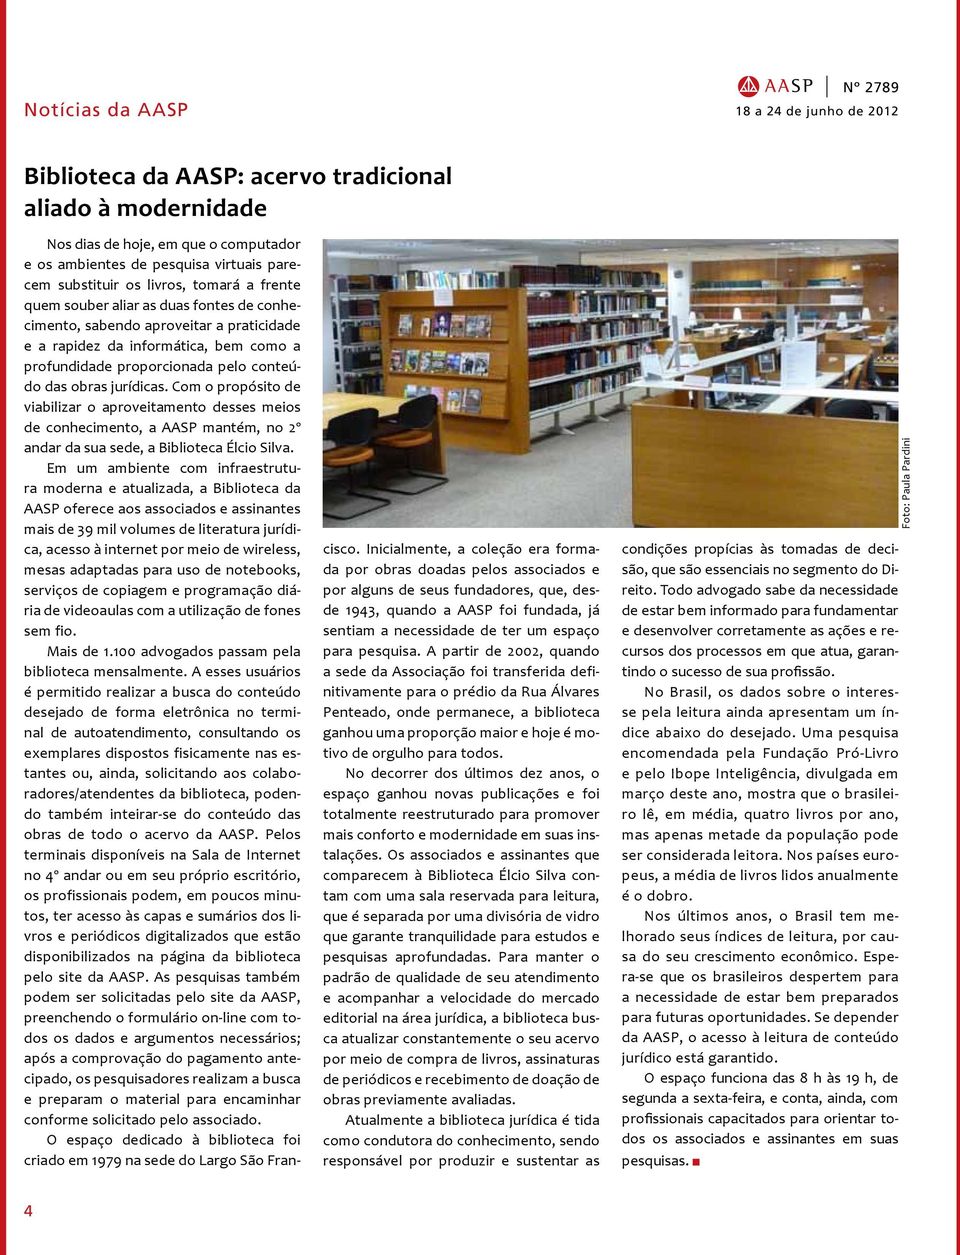 Com o propósito de viabilizar o aproveitamento desses meios de conhecimento, a AASP mantém, no 2º andar da sua sede, a Biblioteca Élcio Silva.